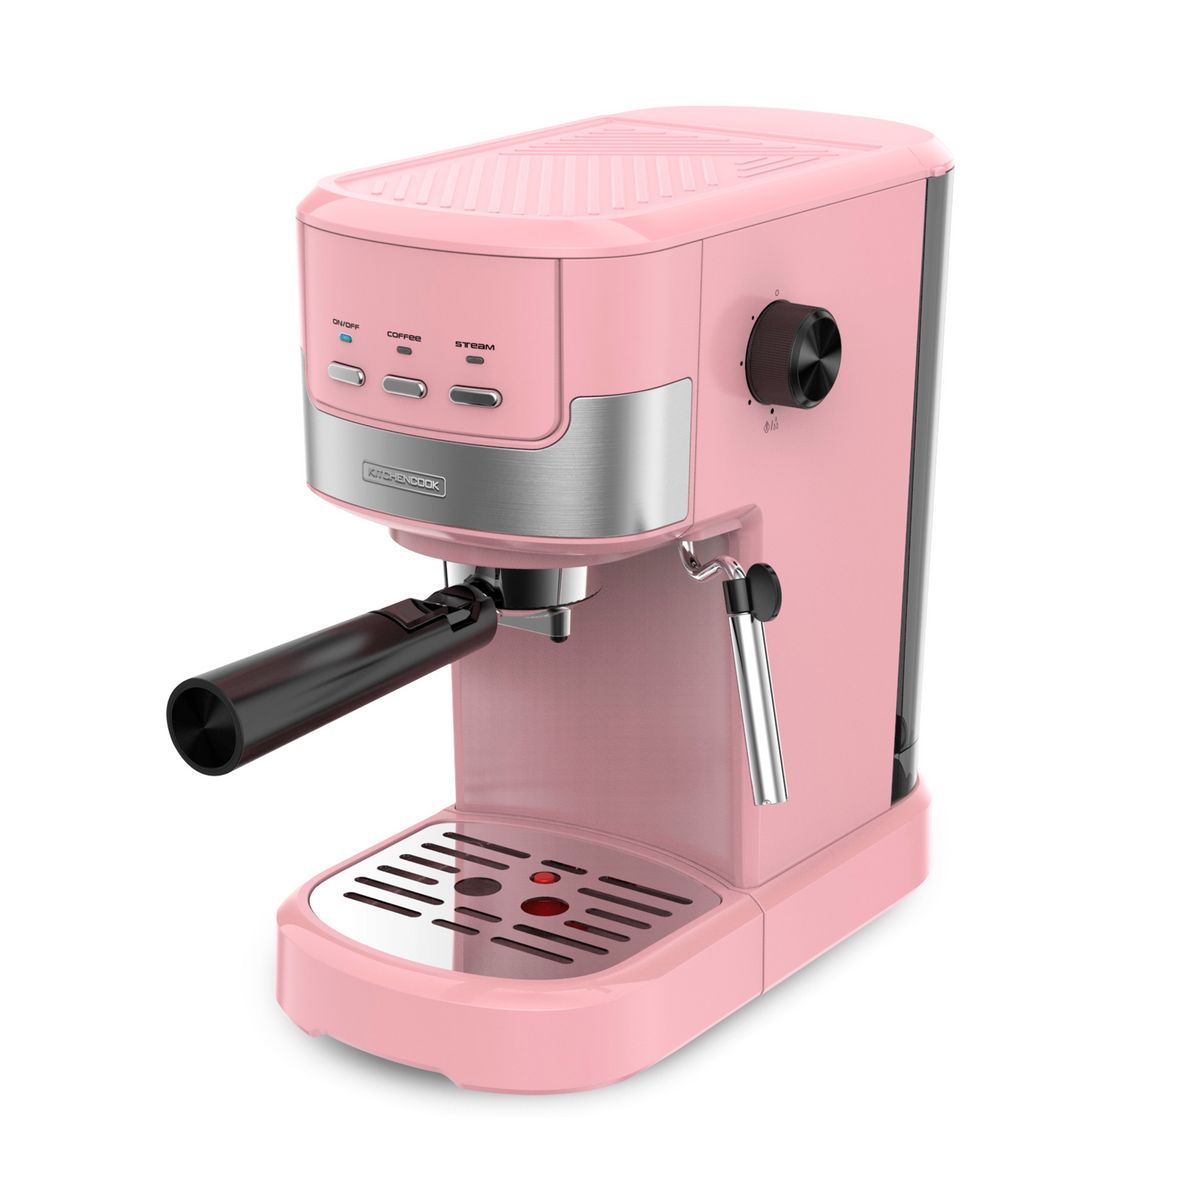 Logical Altitude U.S. dollar KITCHENCOOK Machine à café expresso COLOR MOST - Rose pas cher - Auchan.fr